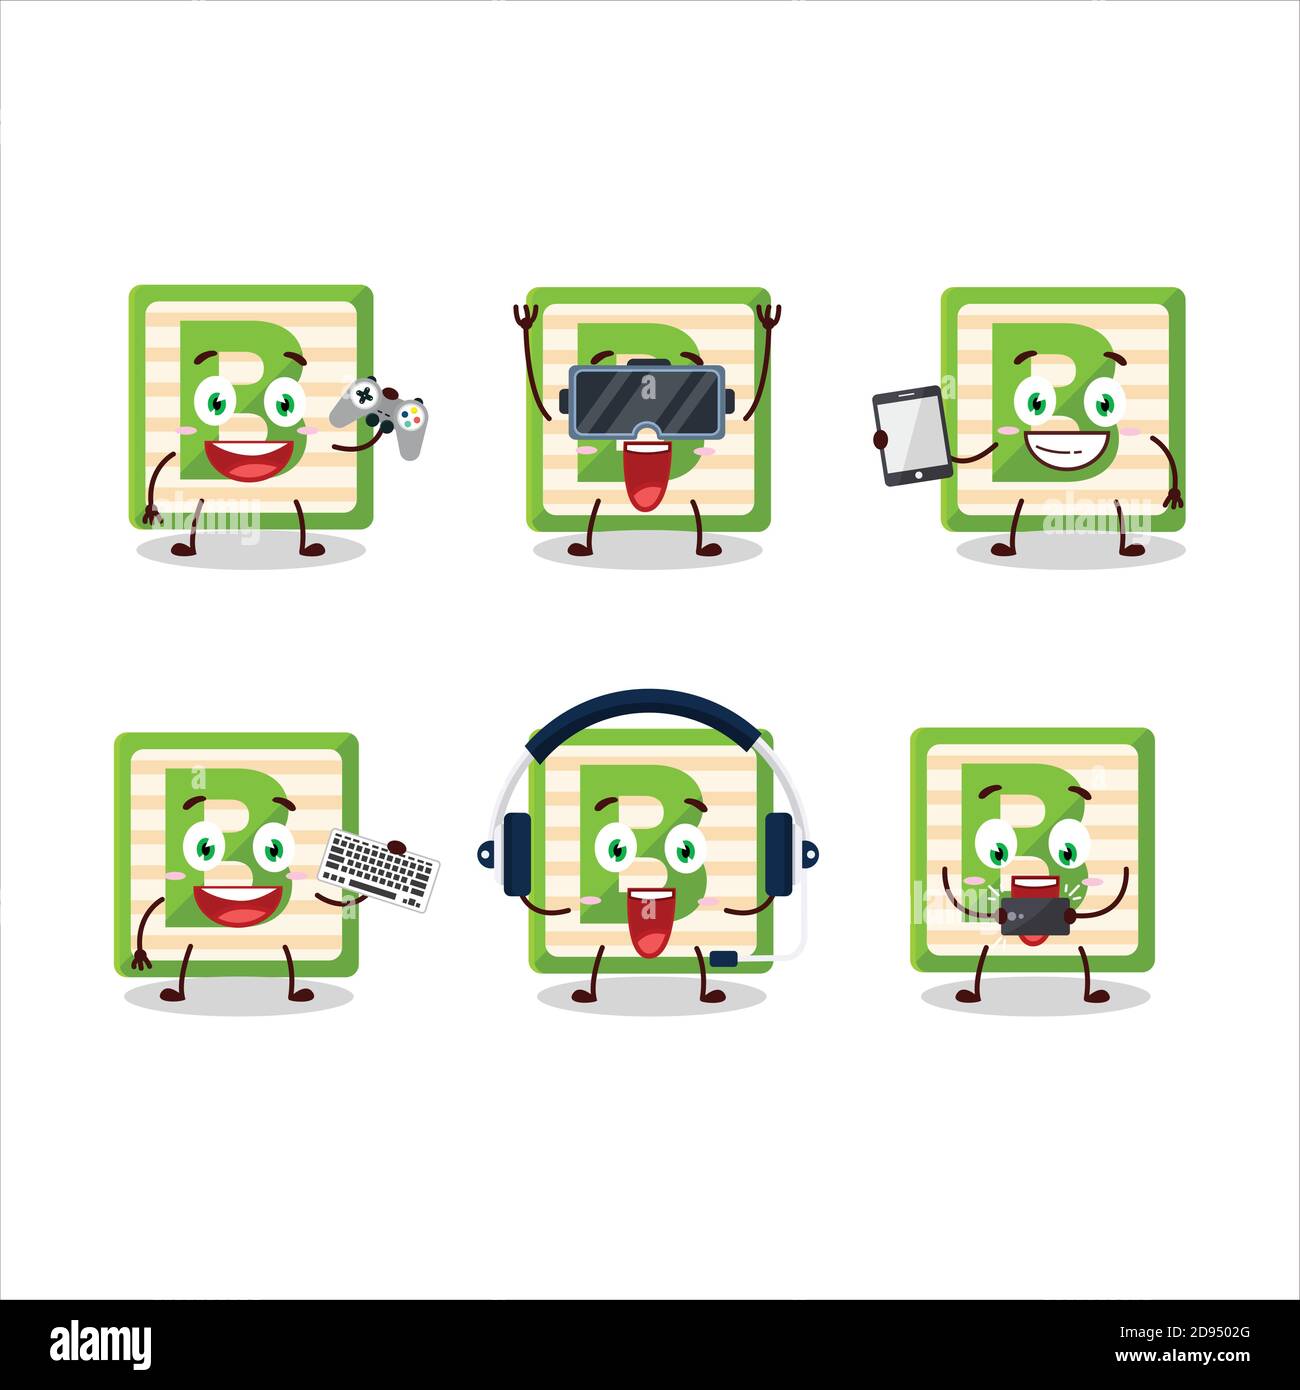 Le personnage de dessin animé du bloc de jouets B joue à des jeux avec divers émoticônes mignons Illustration de Vecteur